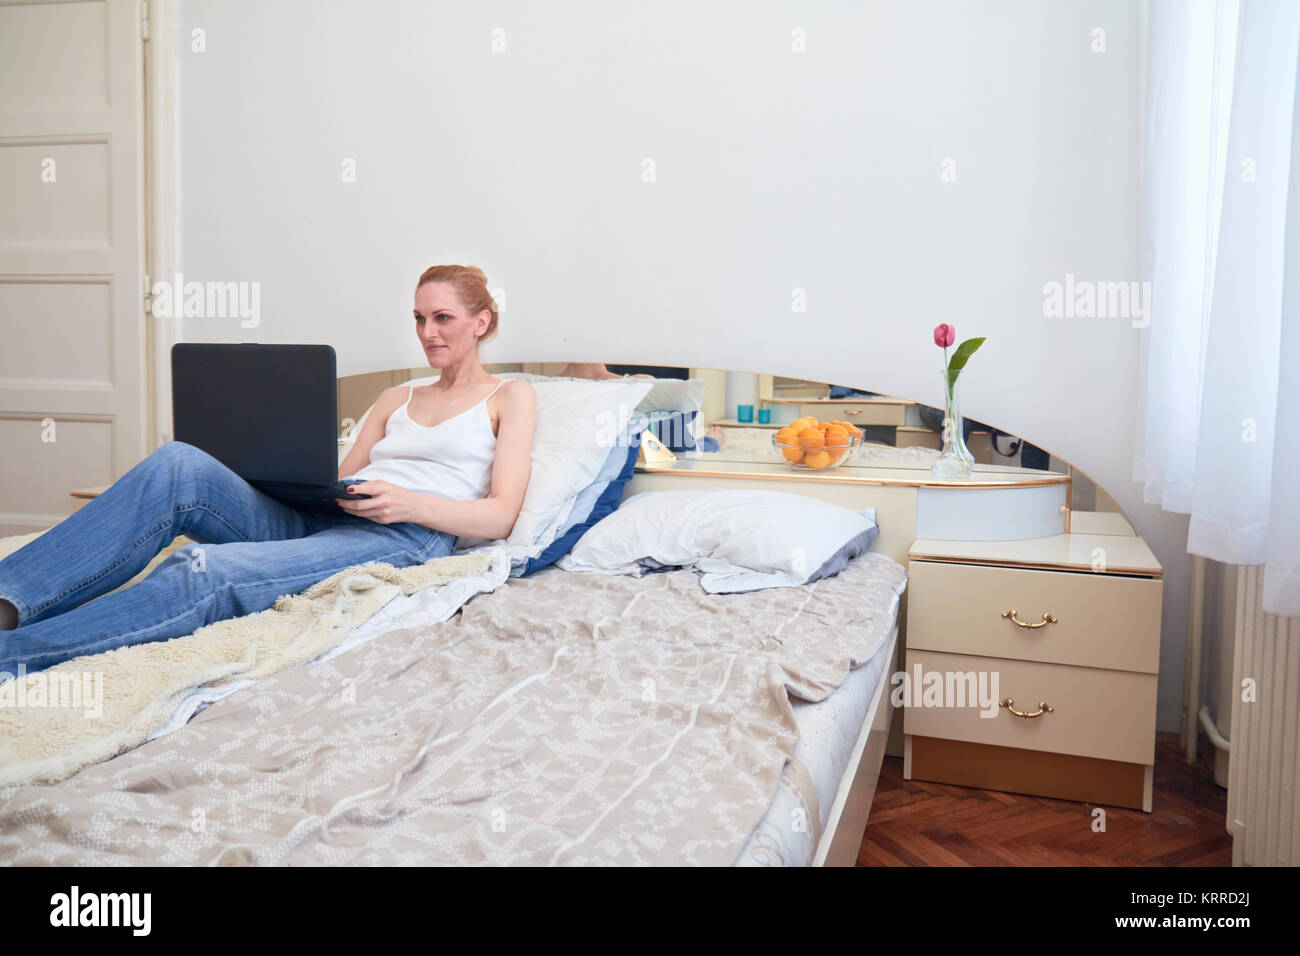 Una mujer, sentando en la cama smirking, utilizando equipo portátil. ordinaria habitación blanca interior. Foto de stock